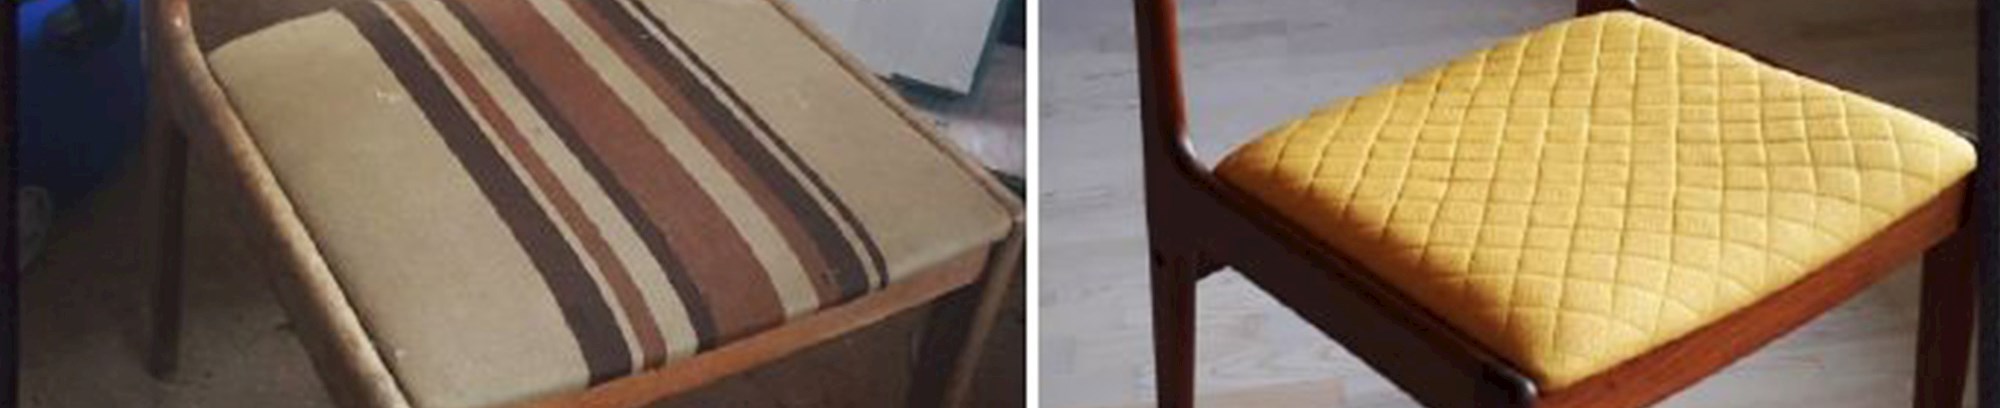 Møbelpolstring - Lær at ompolstre sæder til spisebordsstole.